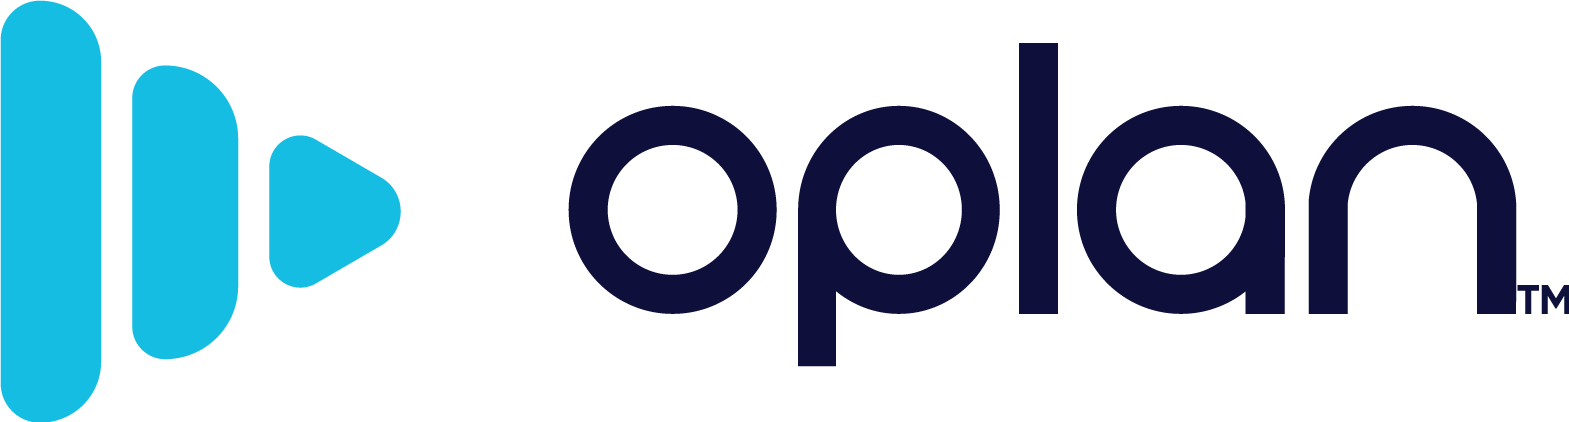 Oplan logo